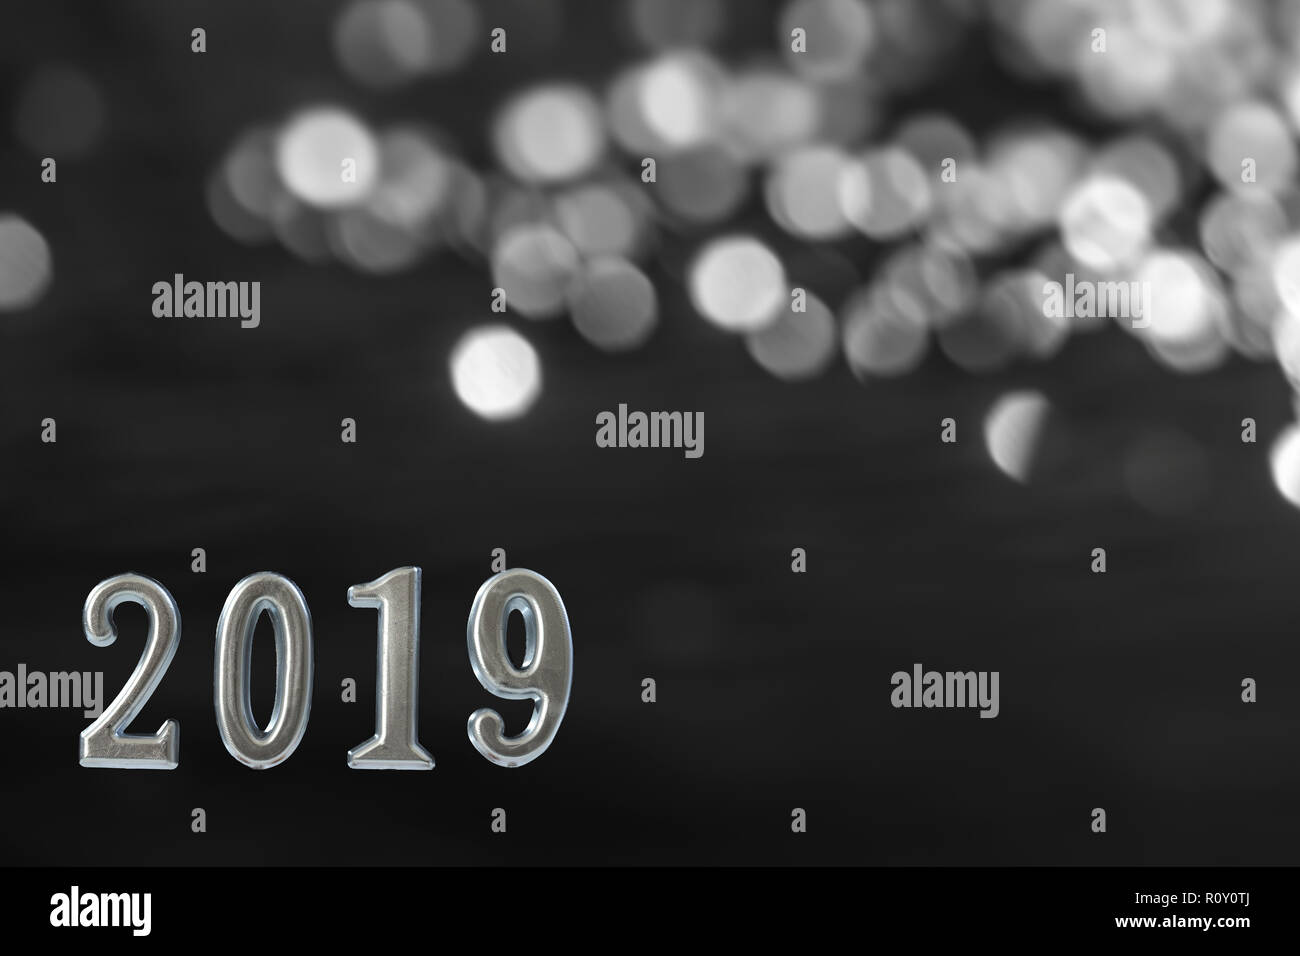 Texte d'argent de plus de 2019 bougies brillant, noir sur mur.Nouveau concept de l'année, l'arrière-plan. Banque D'Images